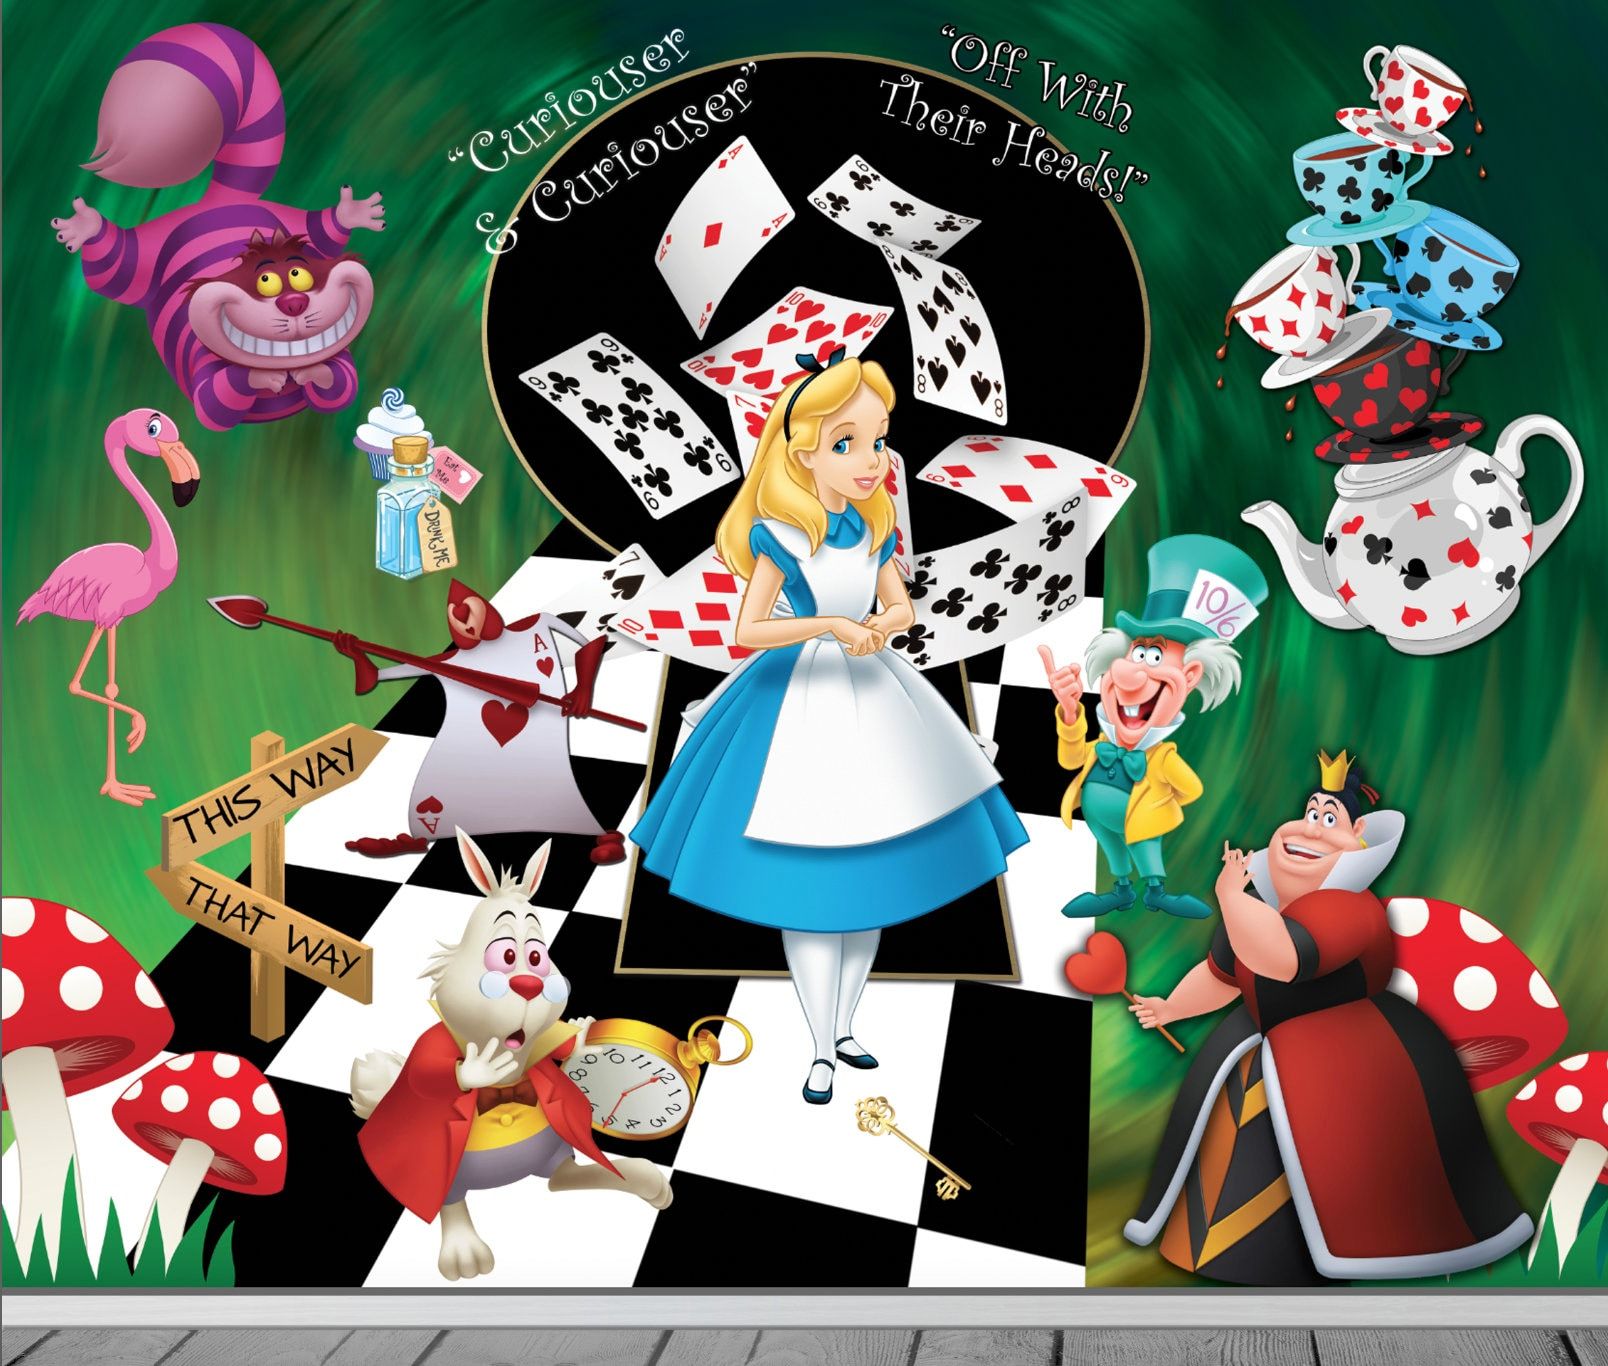  Alice Im Wunderland Hintergrundbild 1608x1366. Alice Adventures in Wonderland Wallpaper Mural Bedroom Cafe